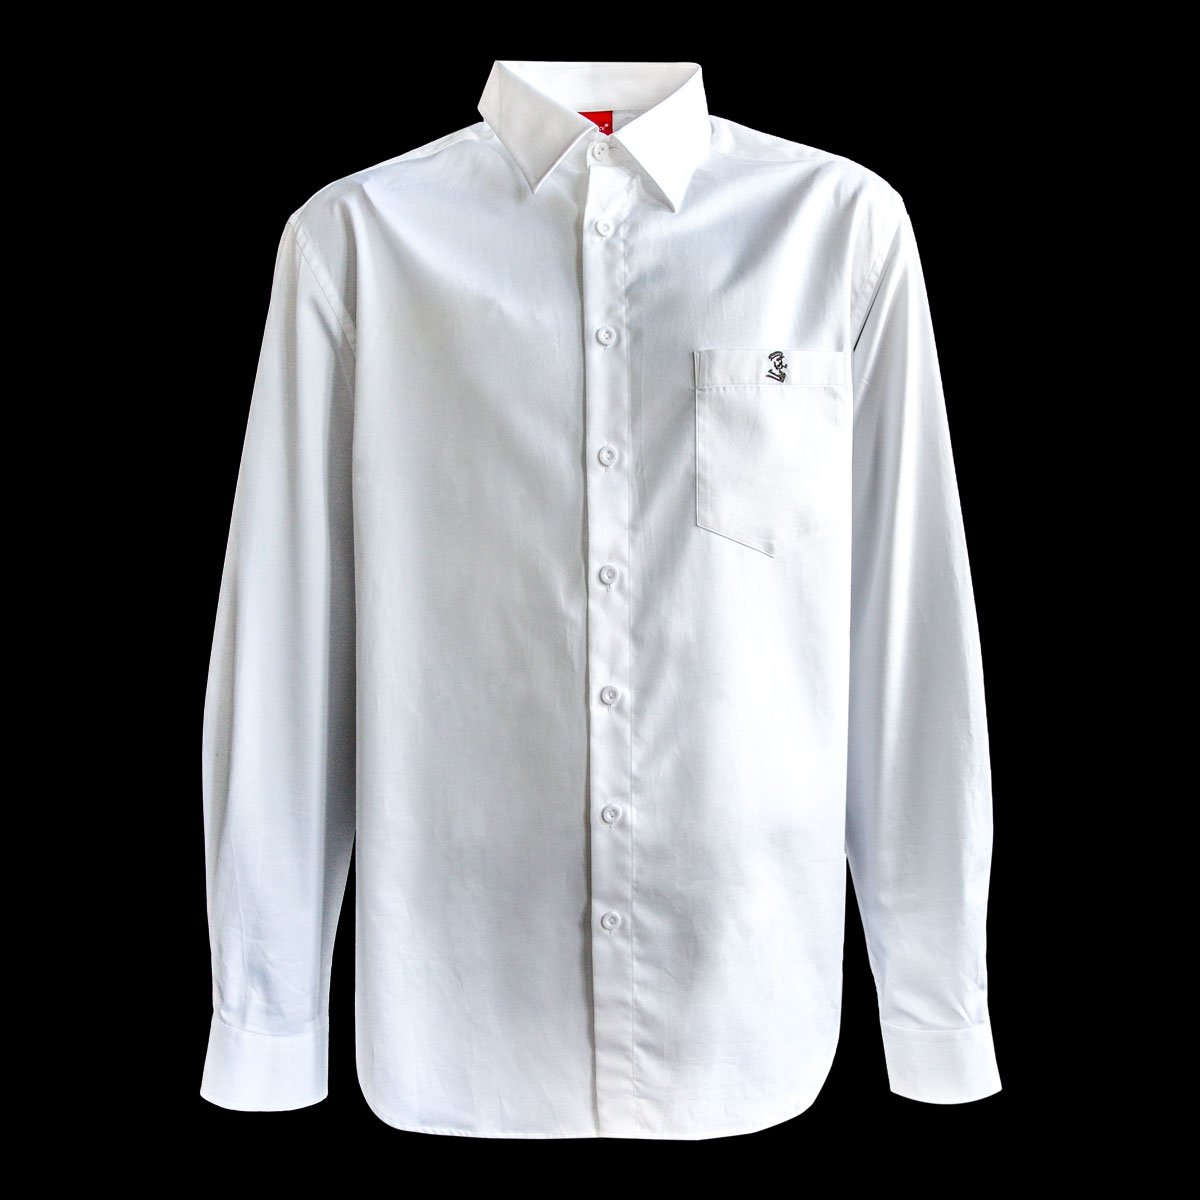 Hansesack Produktbild weißes Business-Hemd mit Brusttasche seidig glänzend von vorne